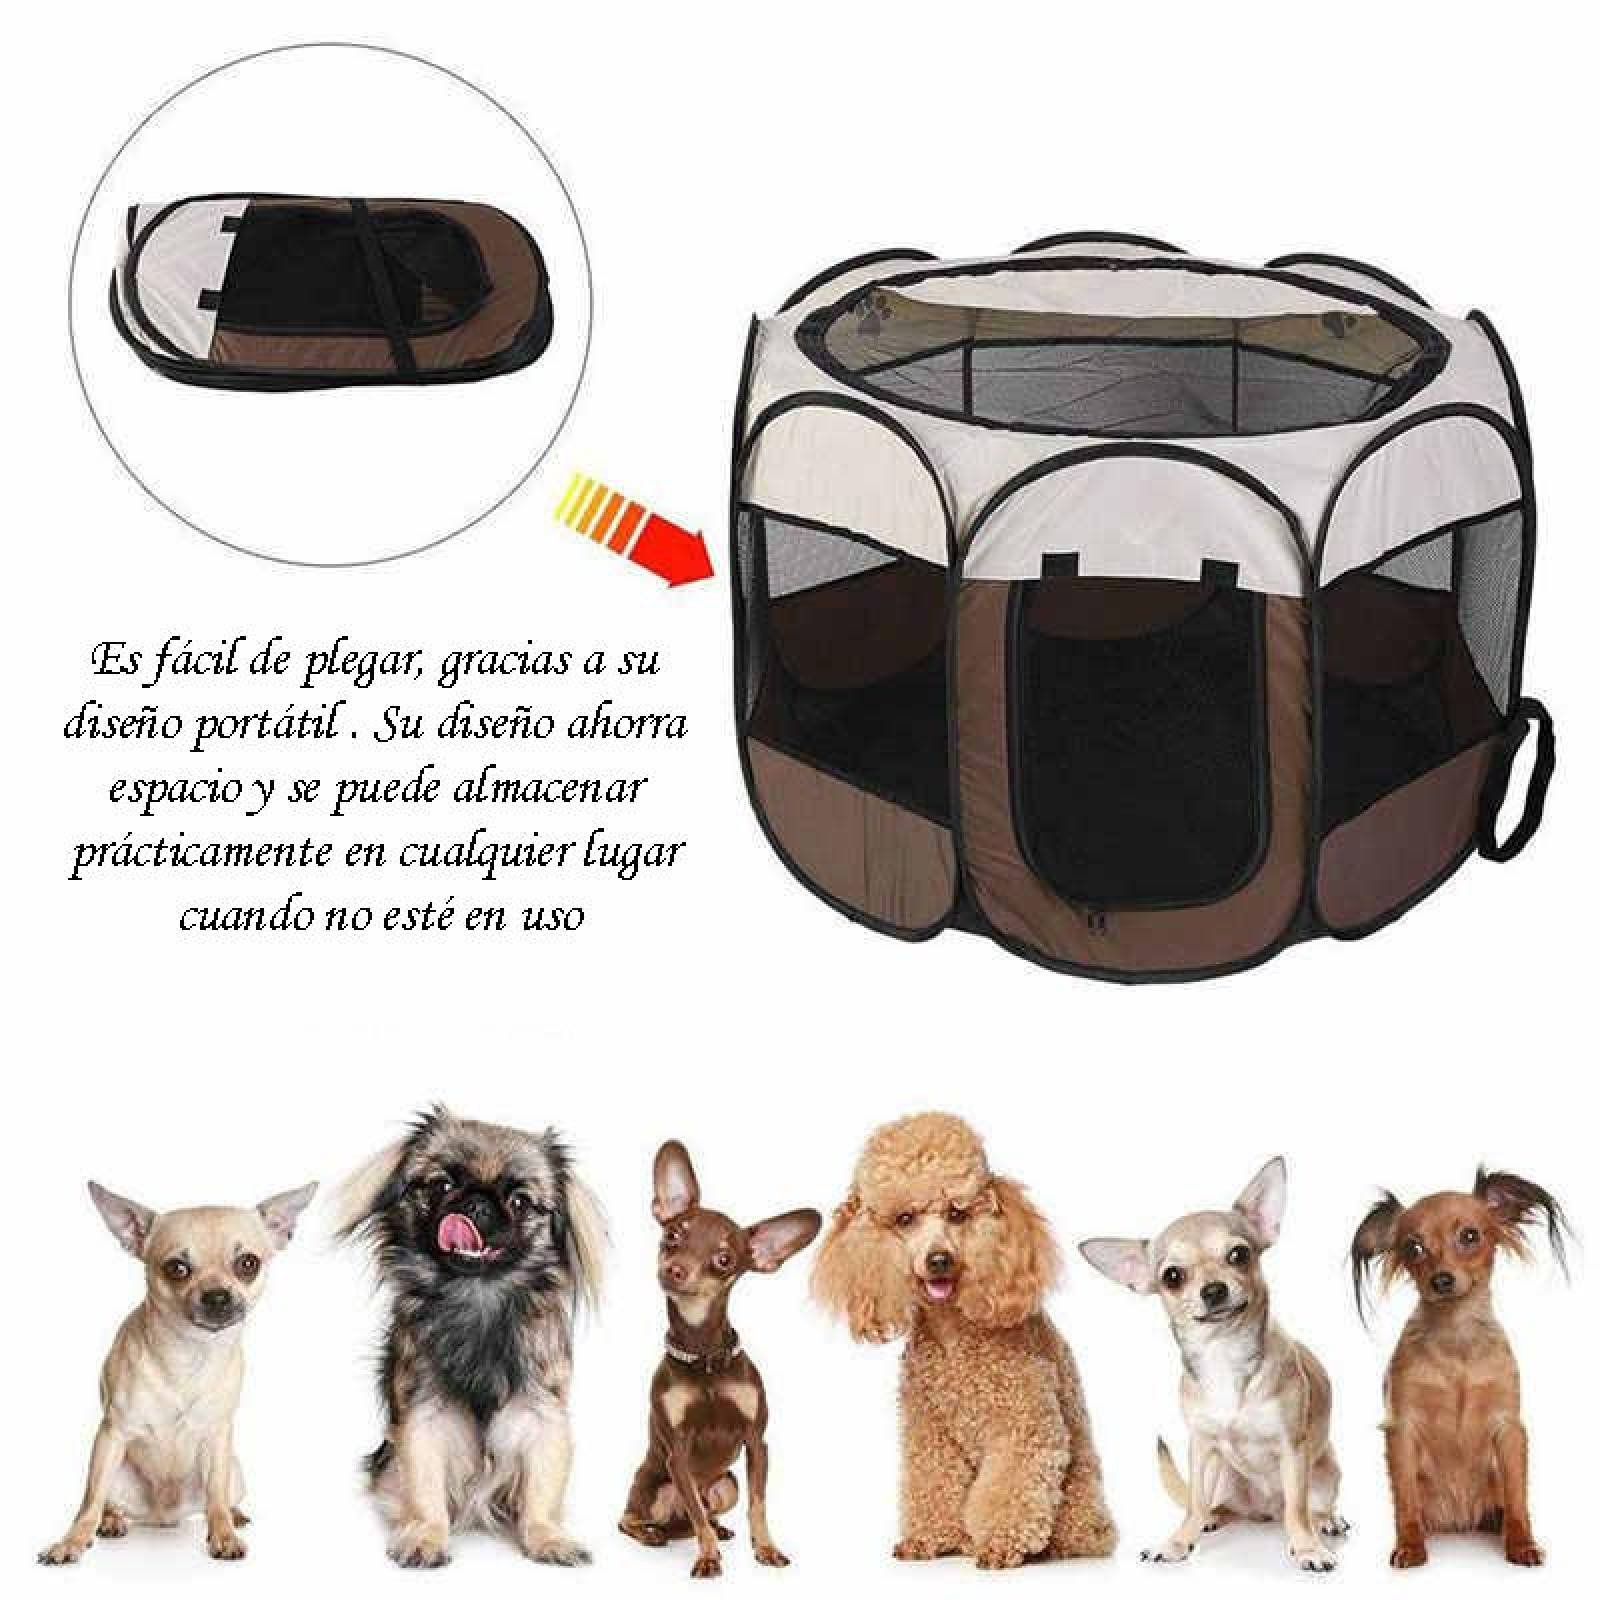 Tienda de campaña Corral para Mascotas Pet Tent Mediano Café Unitalla